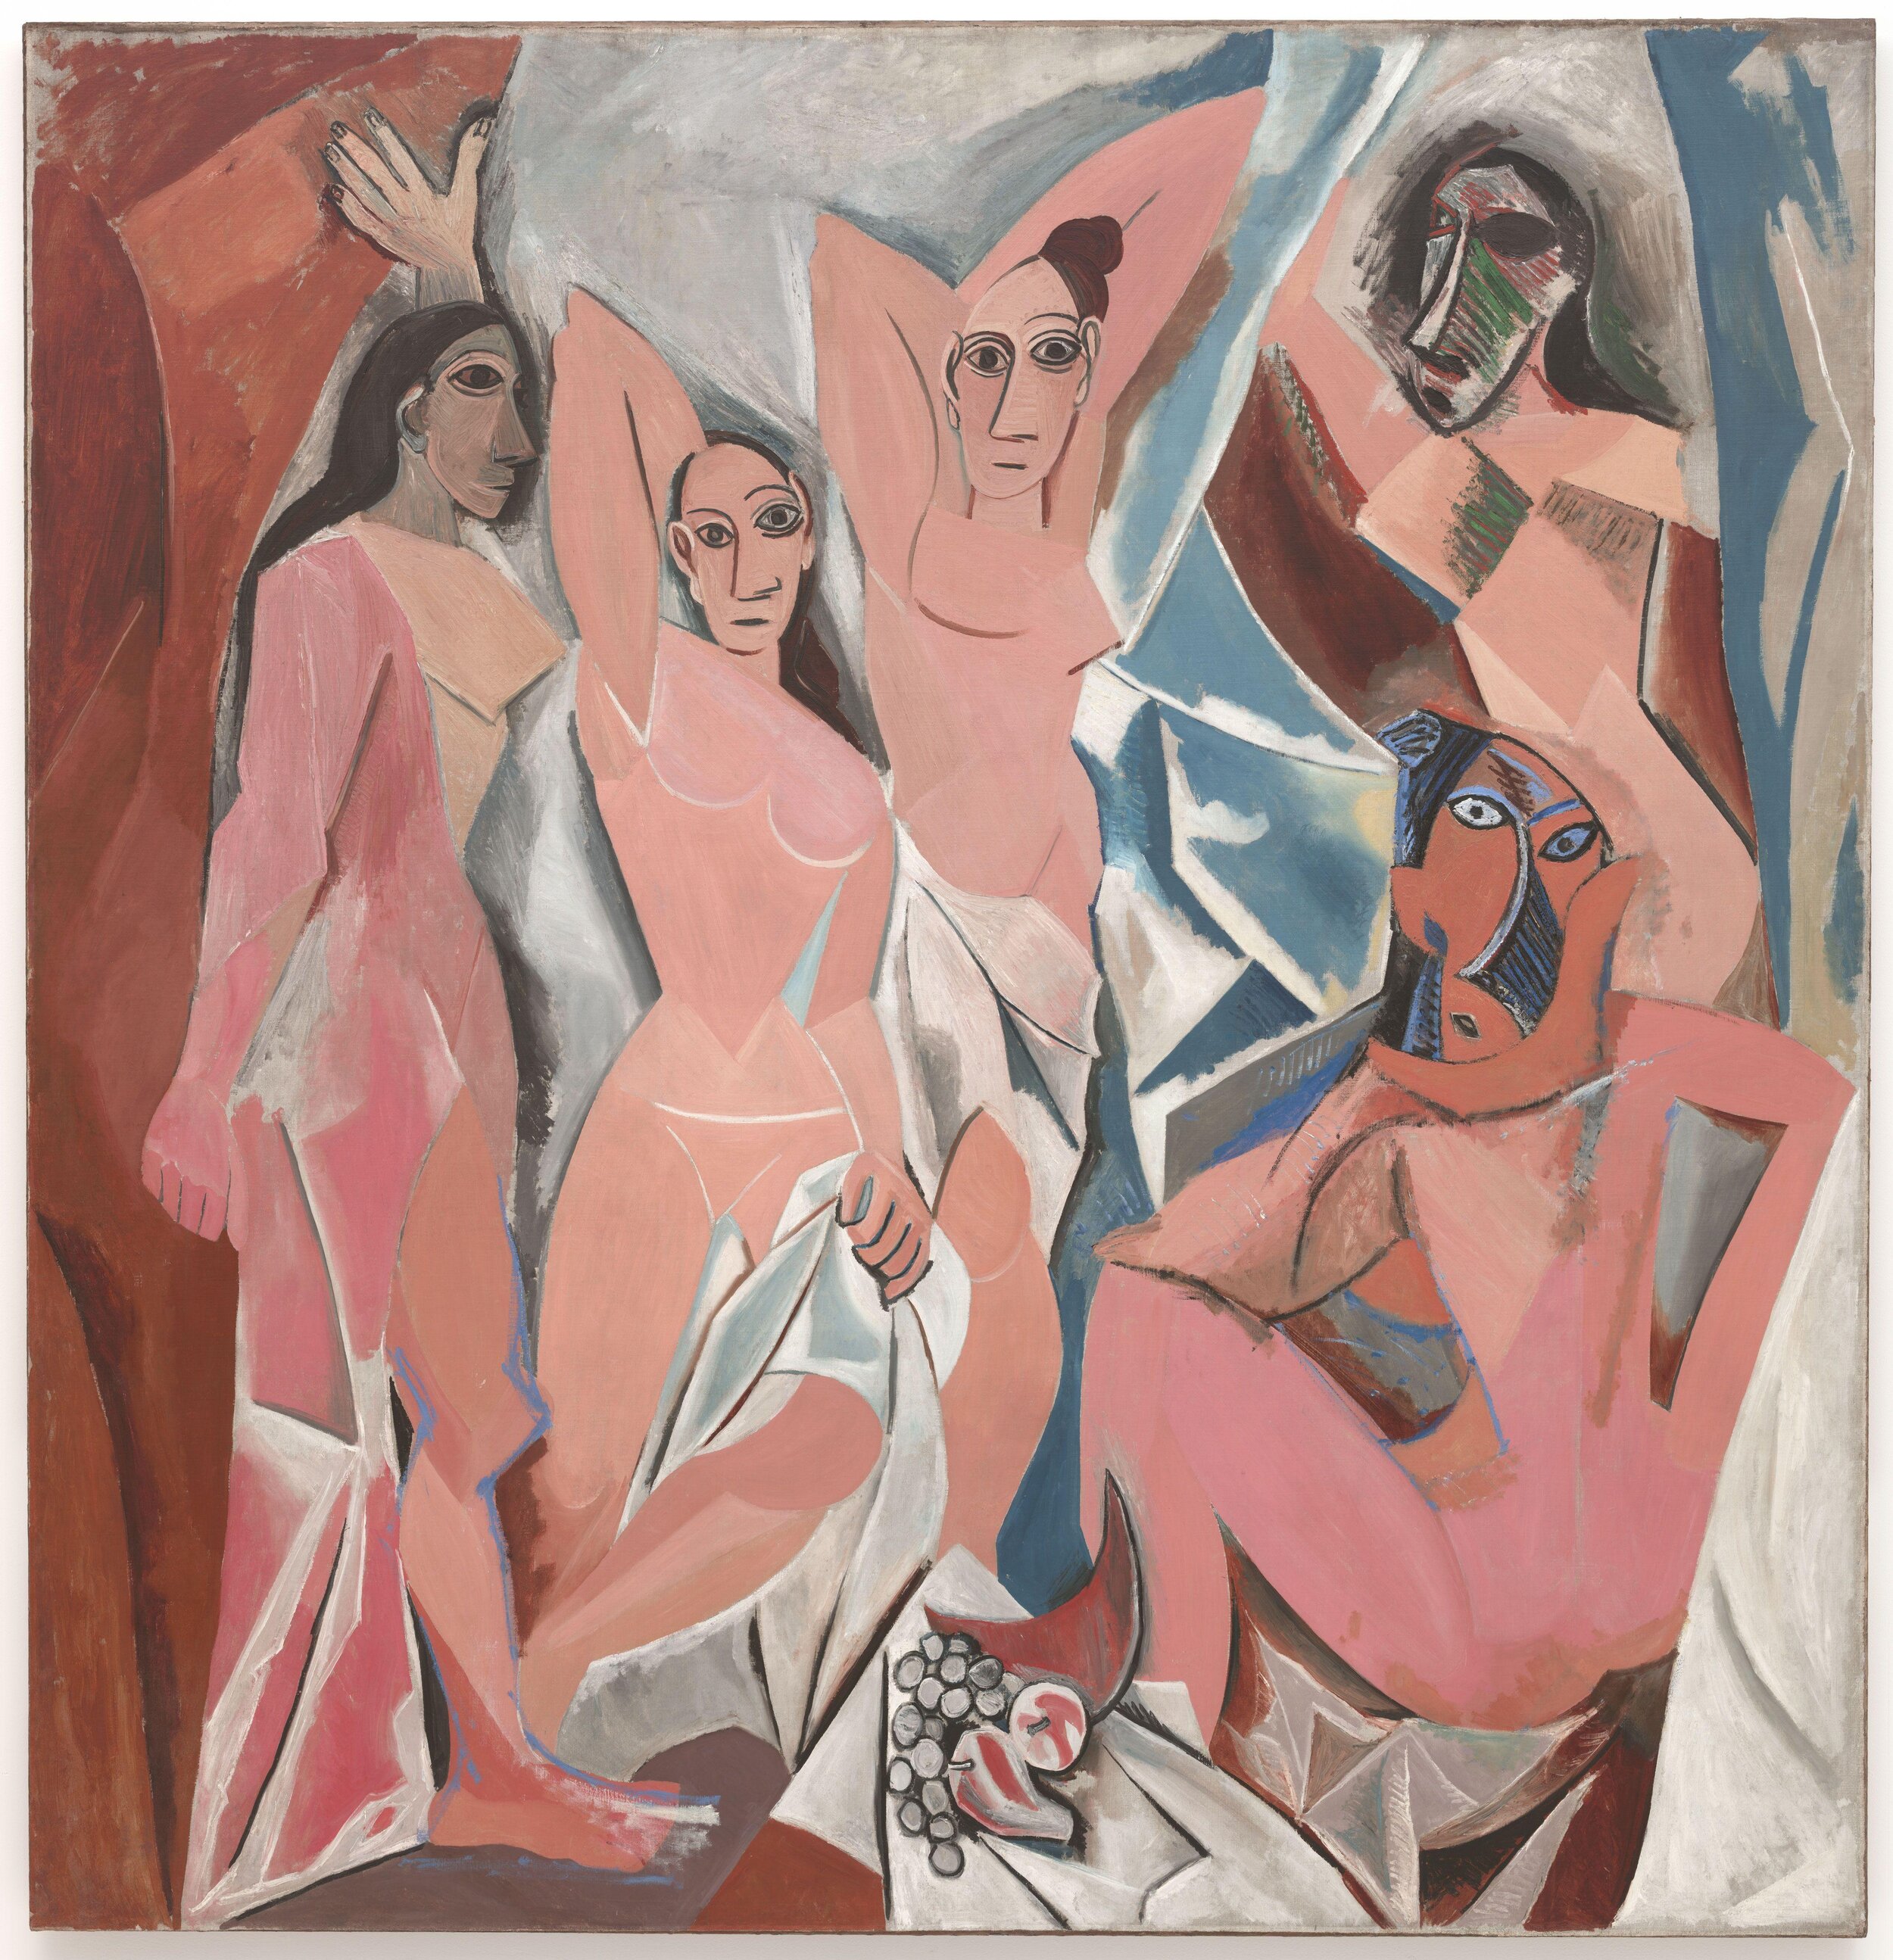 Picasso's Les Demoiselles d'Avignon (1907)